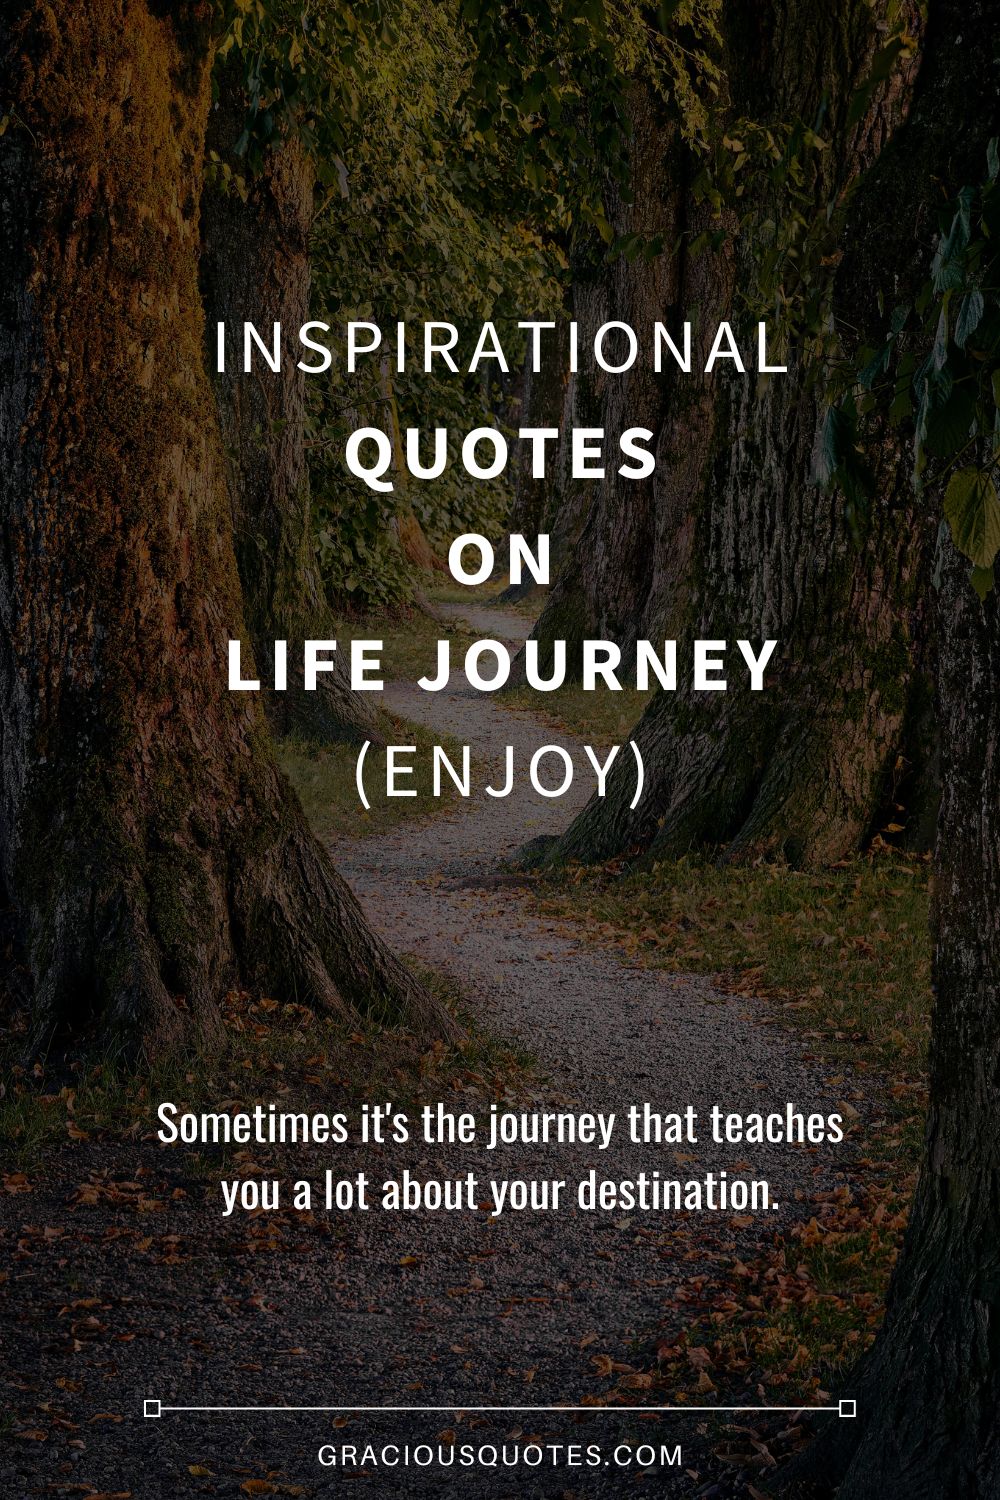 journey quotes